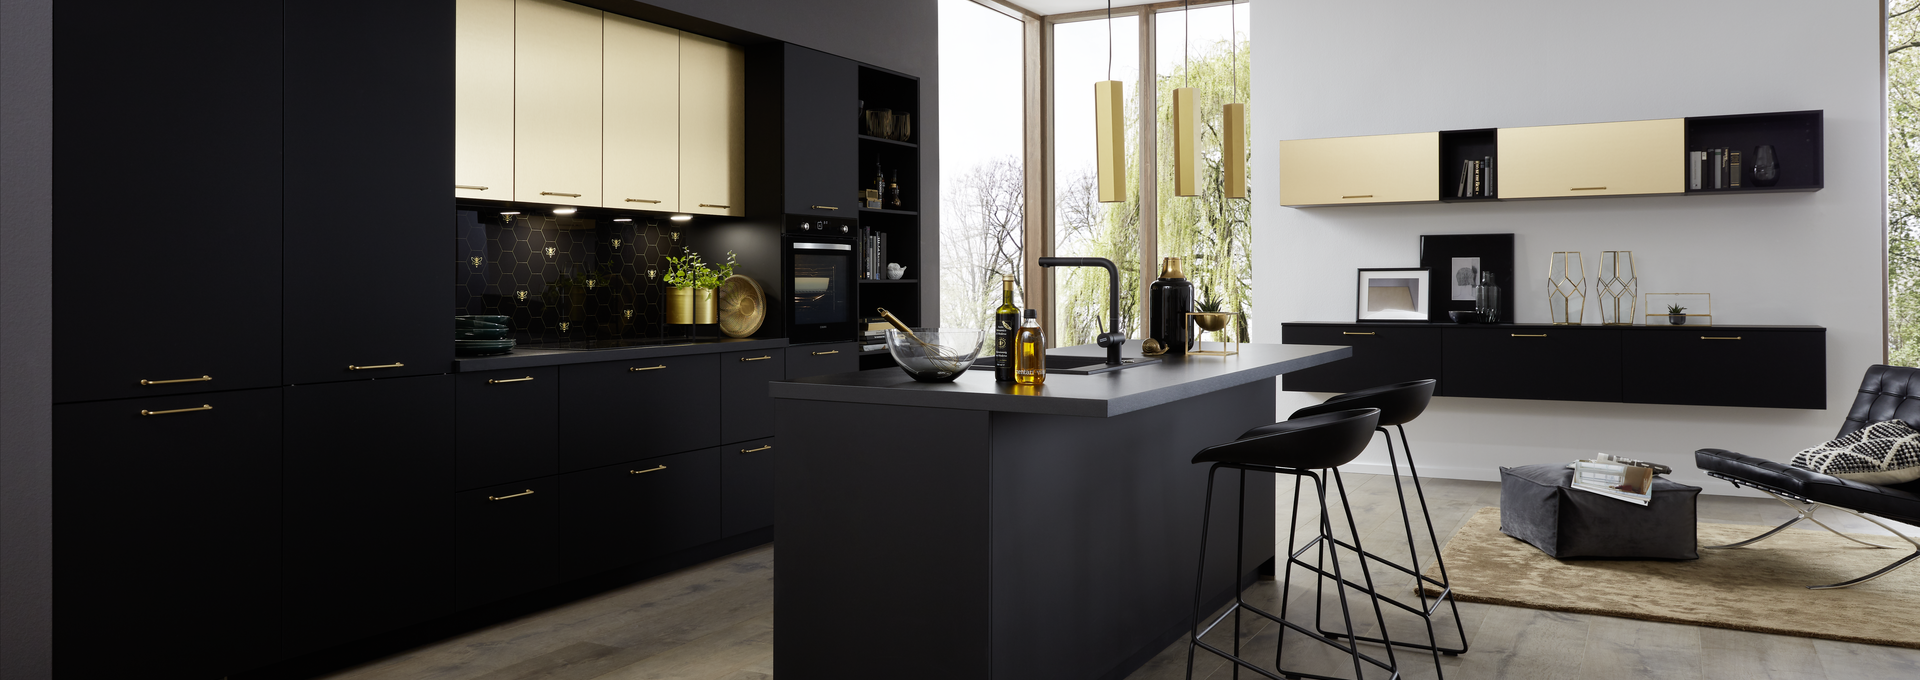 Offene Wohnküche » Design Küche in Schwarz Matt Küche&Co